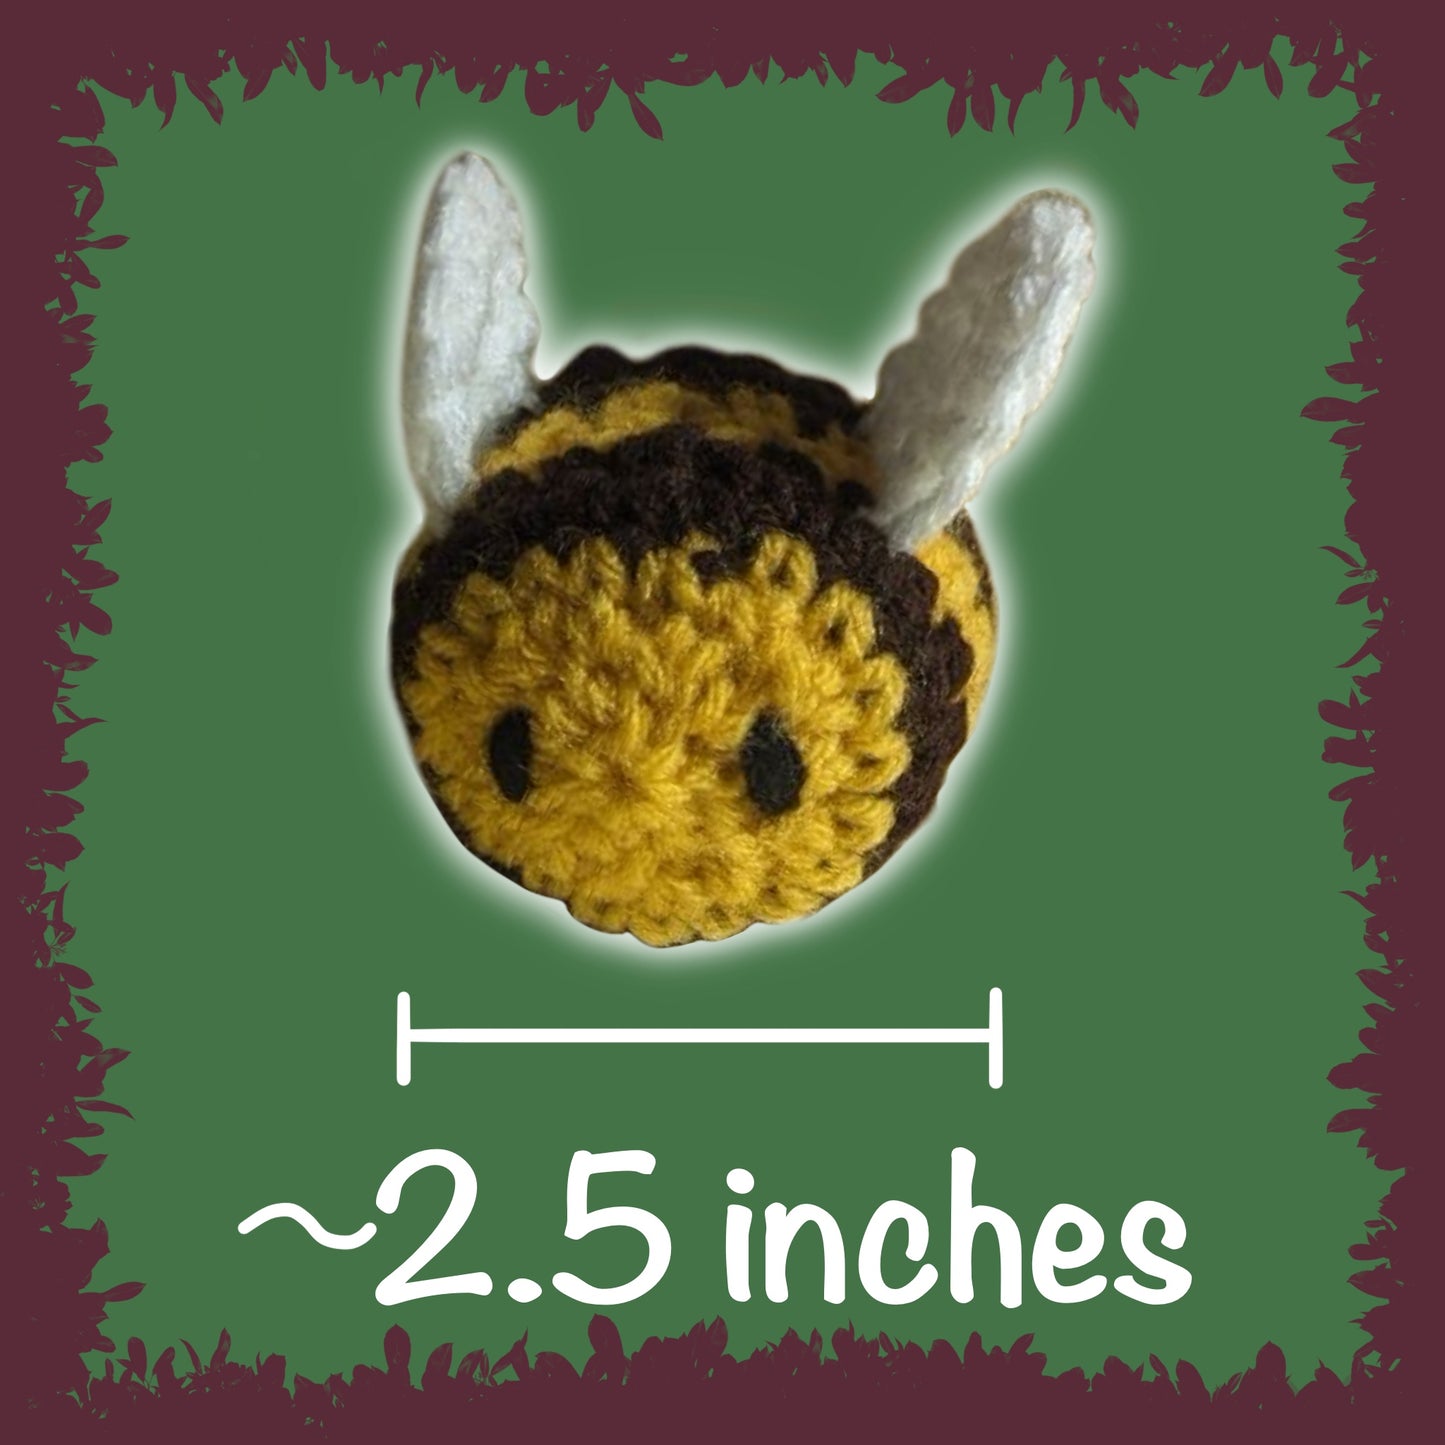 Crochet Bees